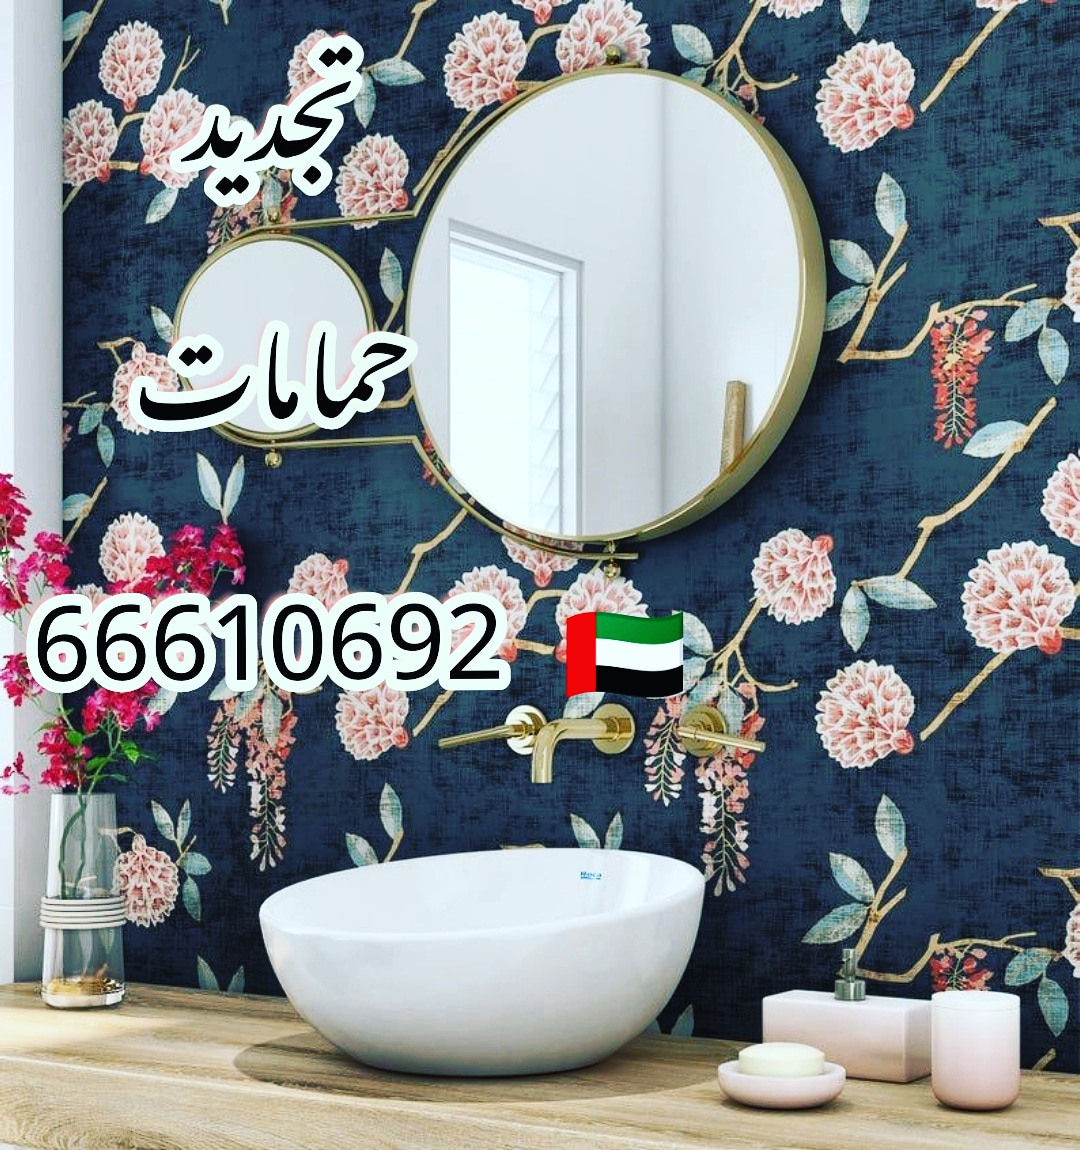 ادوات صحية مبارك الكبير / 66610692 / صيانة وتركيب فني صحي داخل الكويت